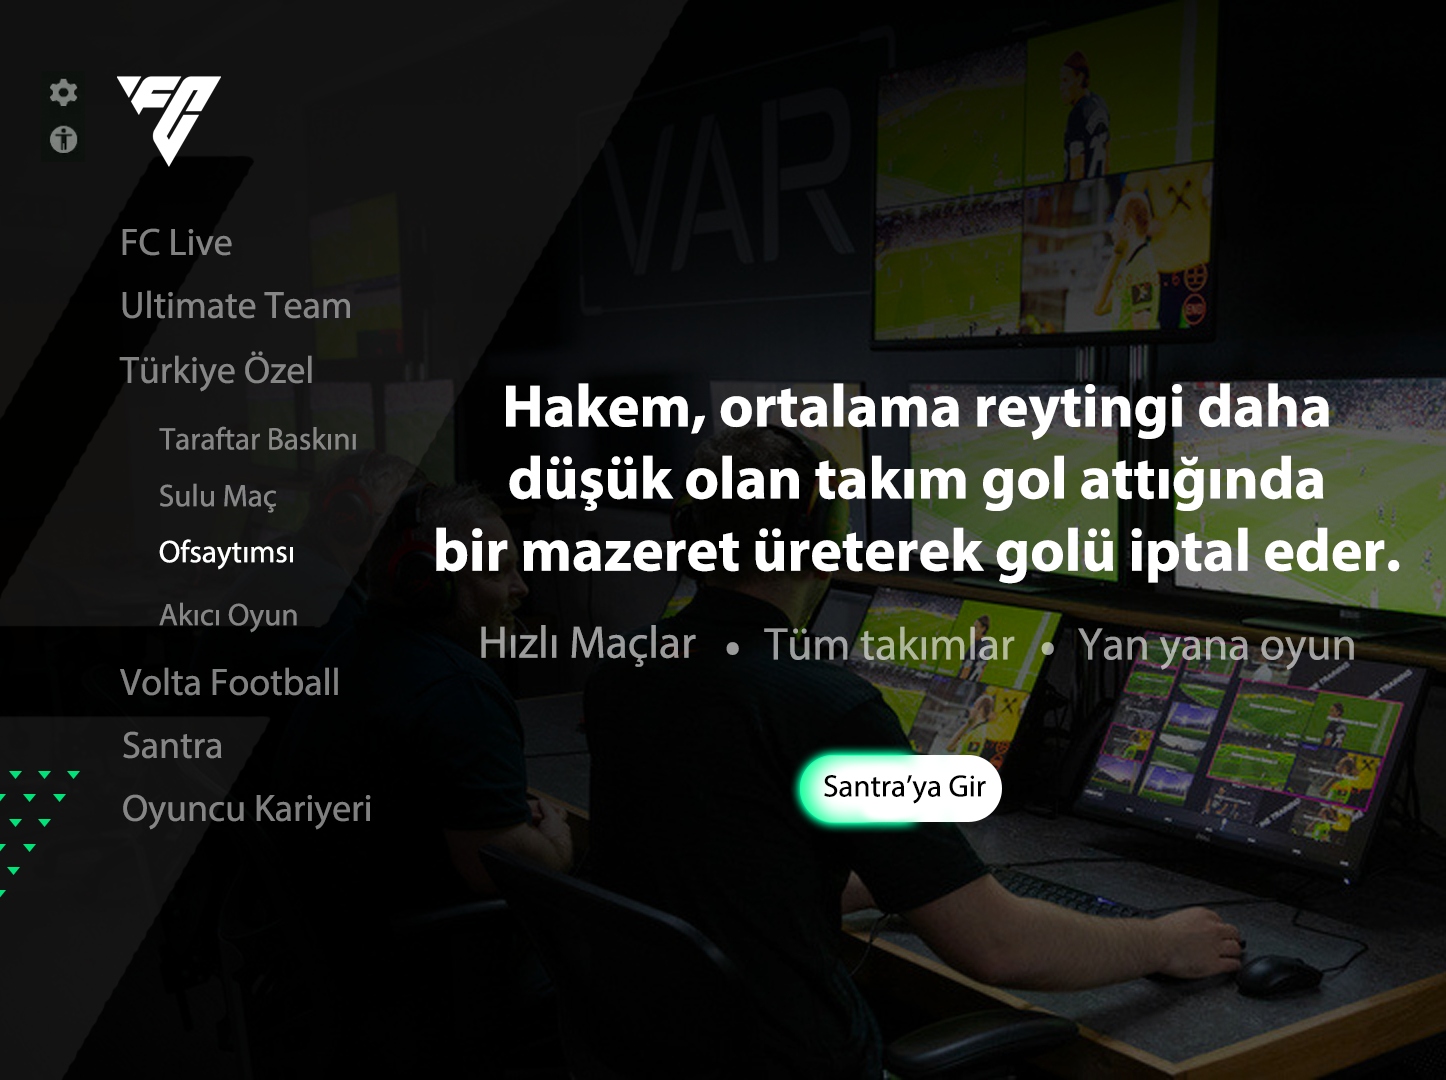 Ulaş Utku Bozdoğan: Böyle Lige Böyle Oyun: FC 24'te Türk Futboluna Özel Modlar ve Taktikler Olsa Nasıl Olurdu? 33